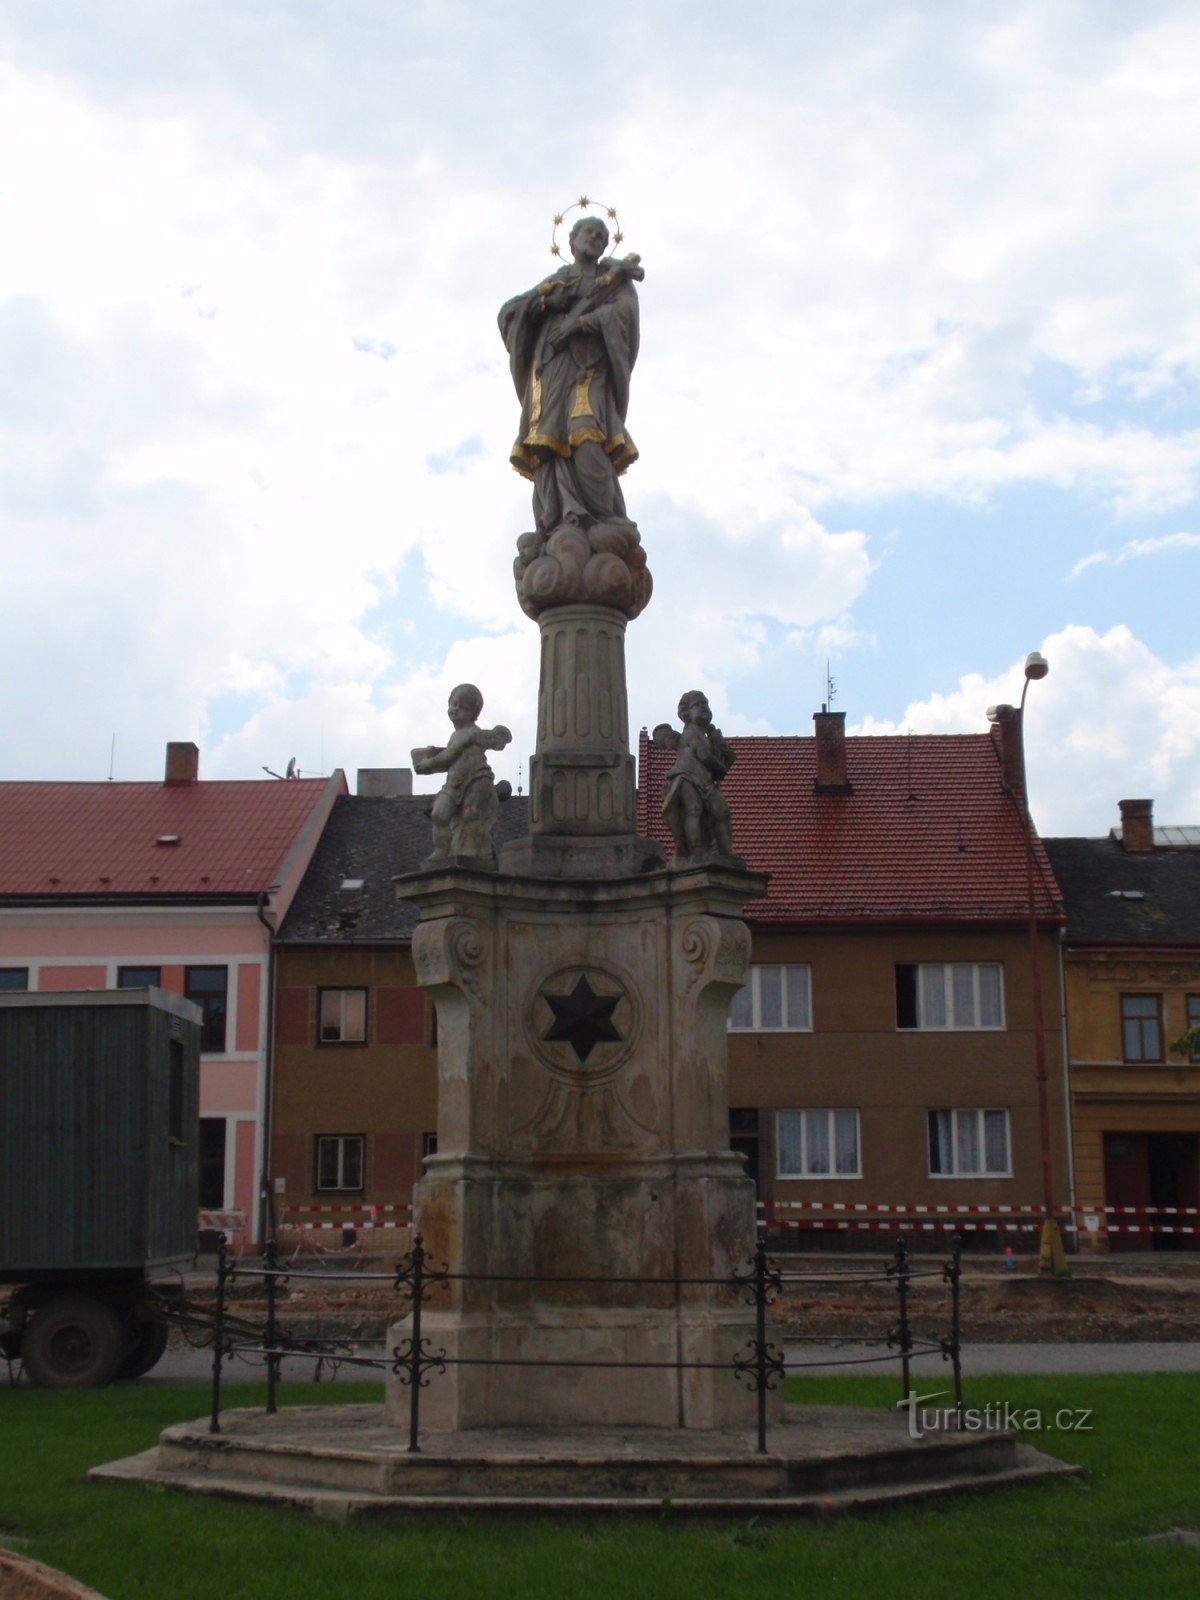 Baroque sculptures in Jevíček